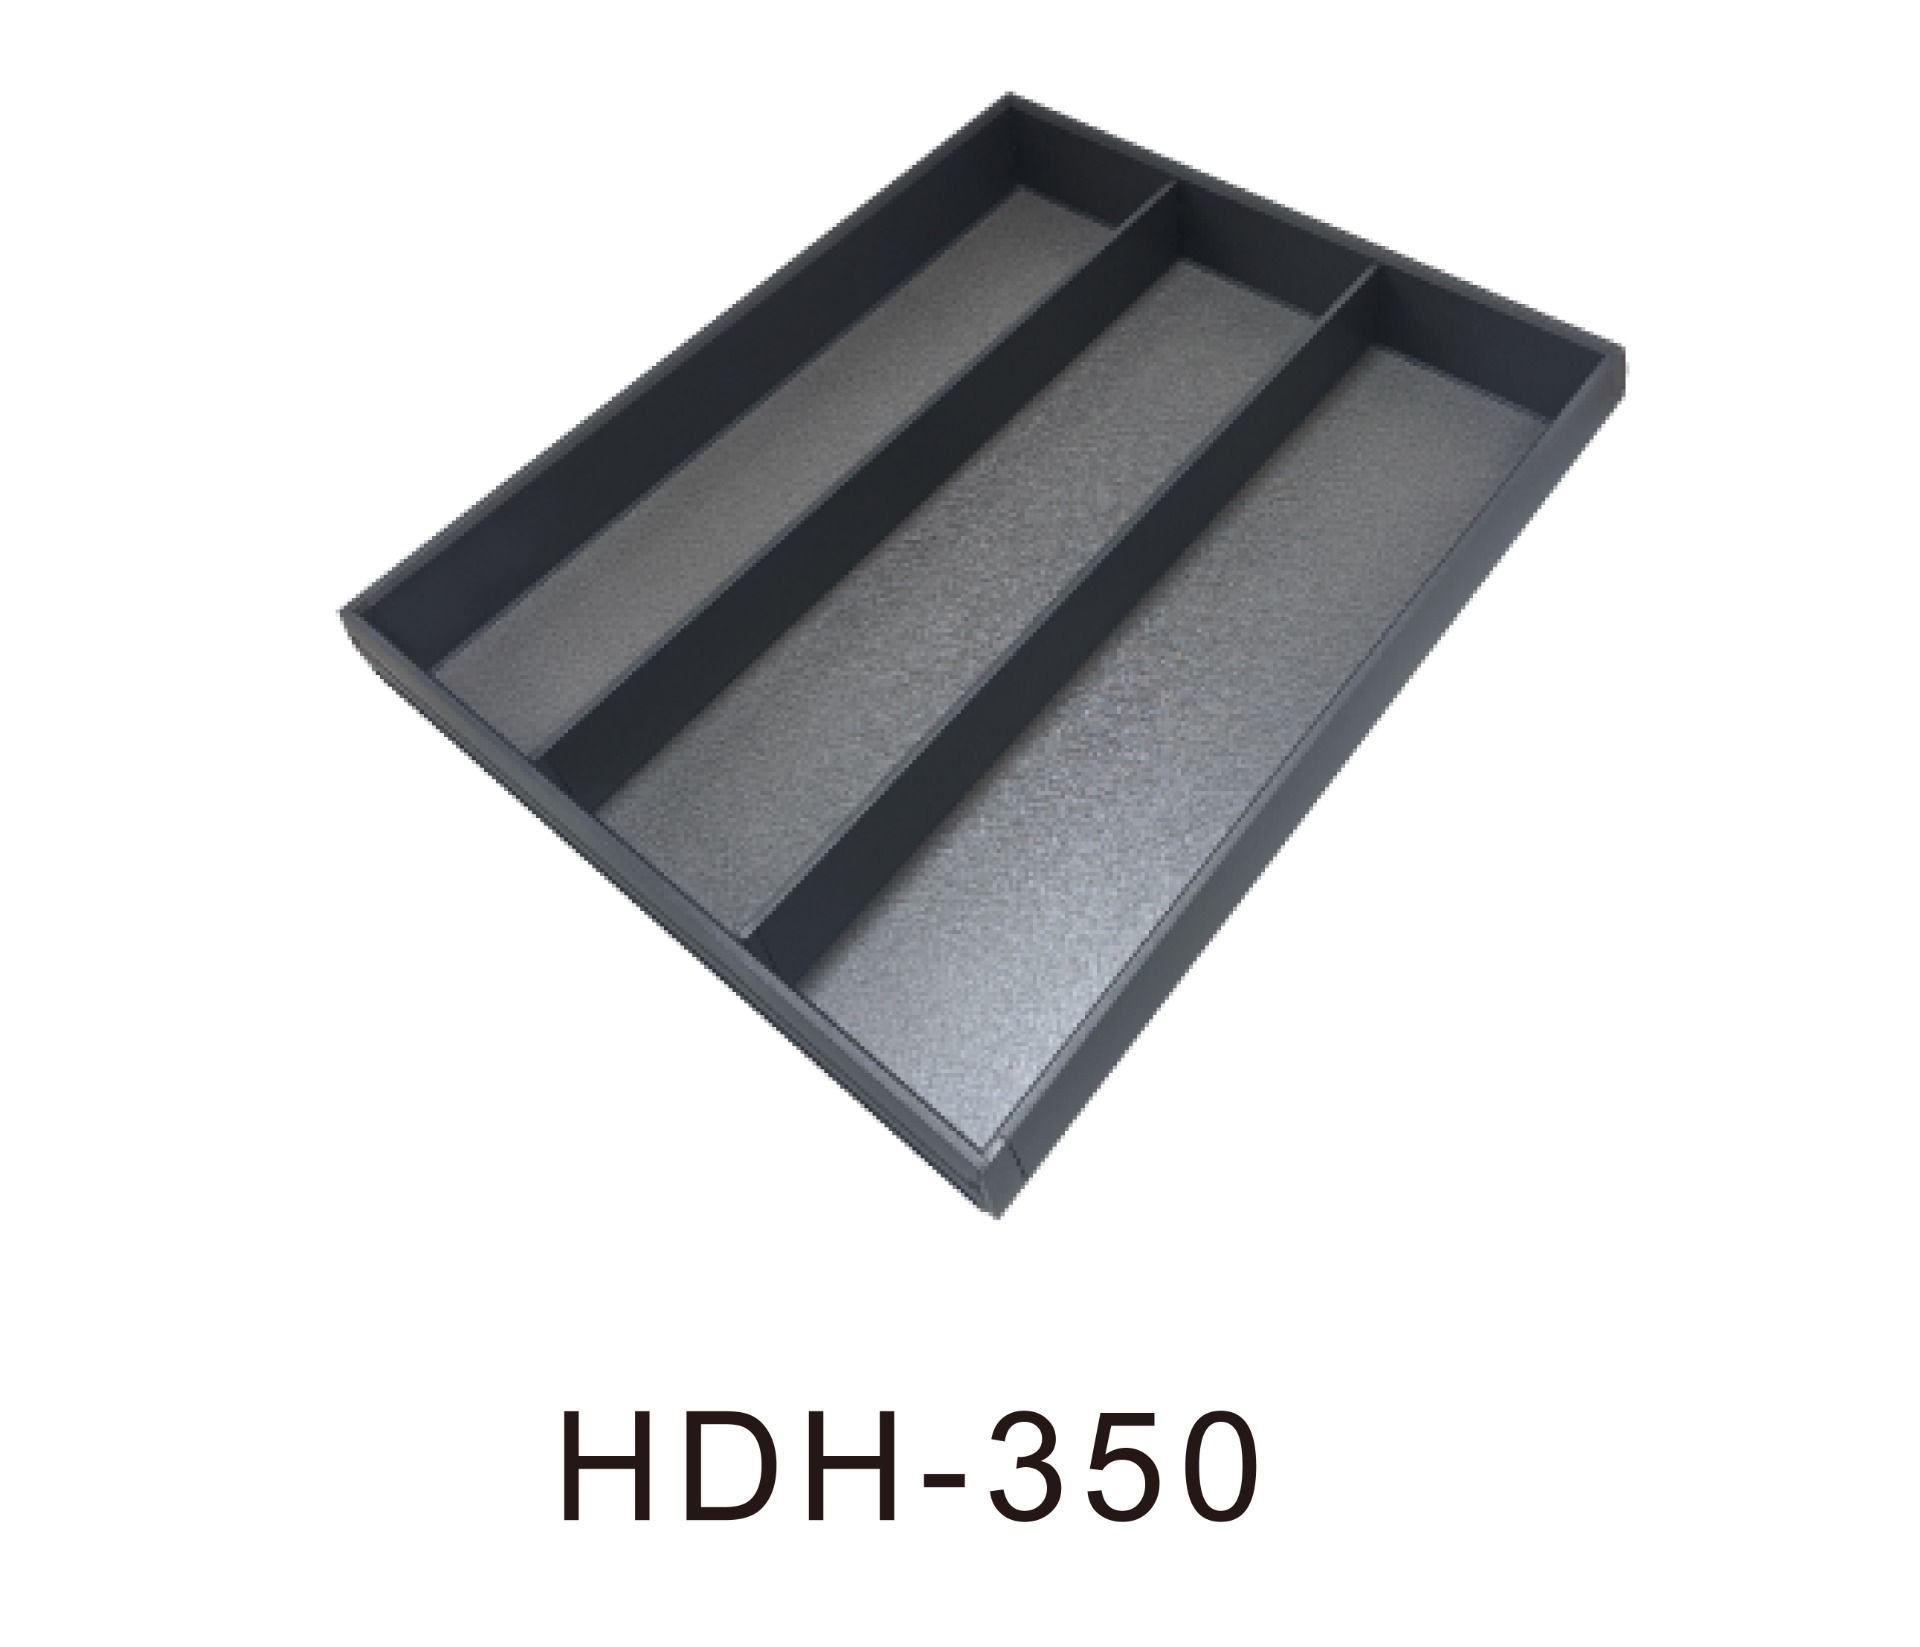 HDH-350